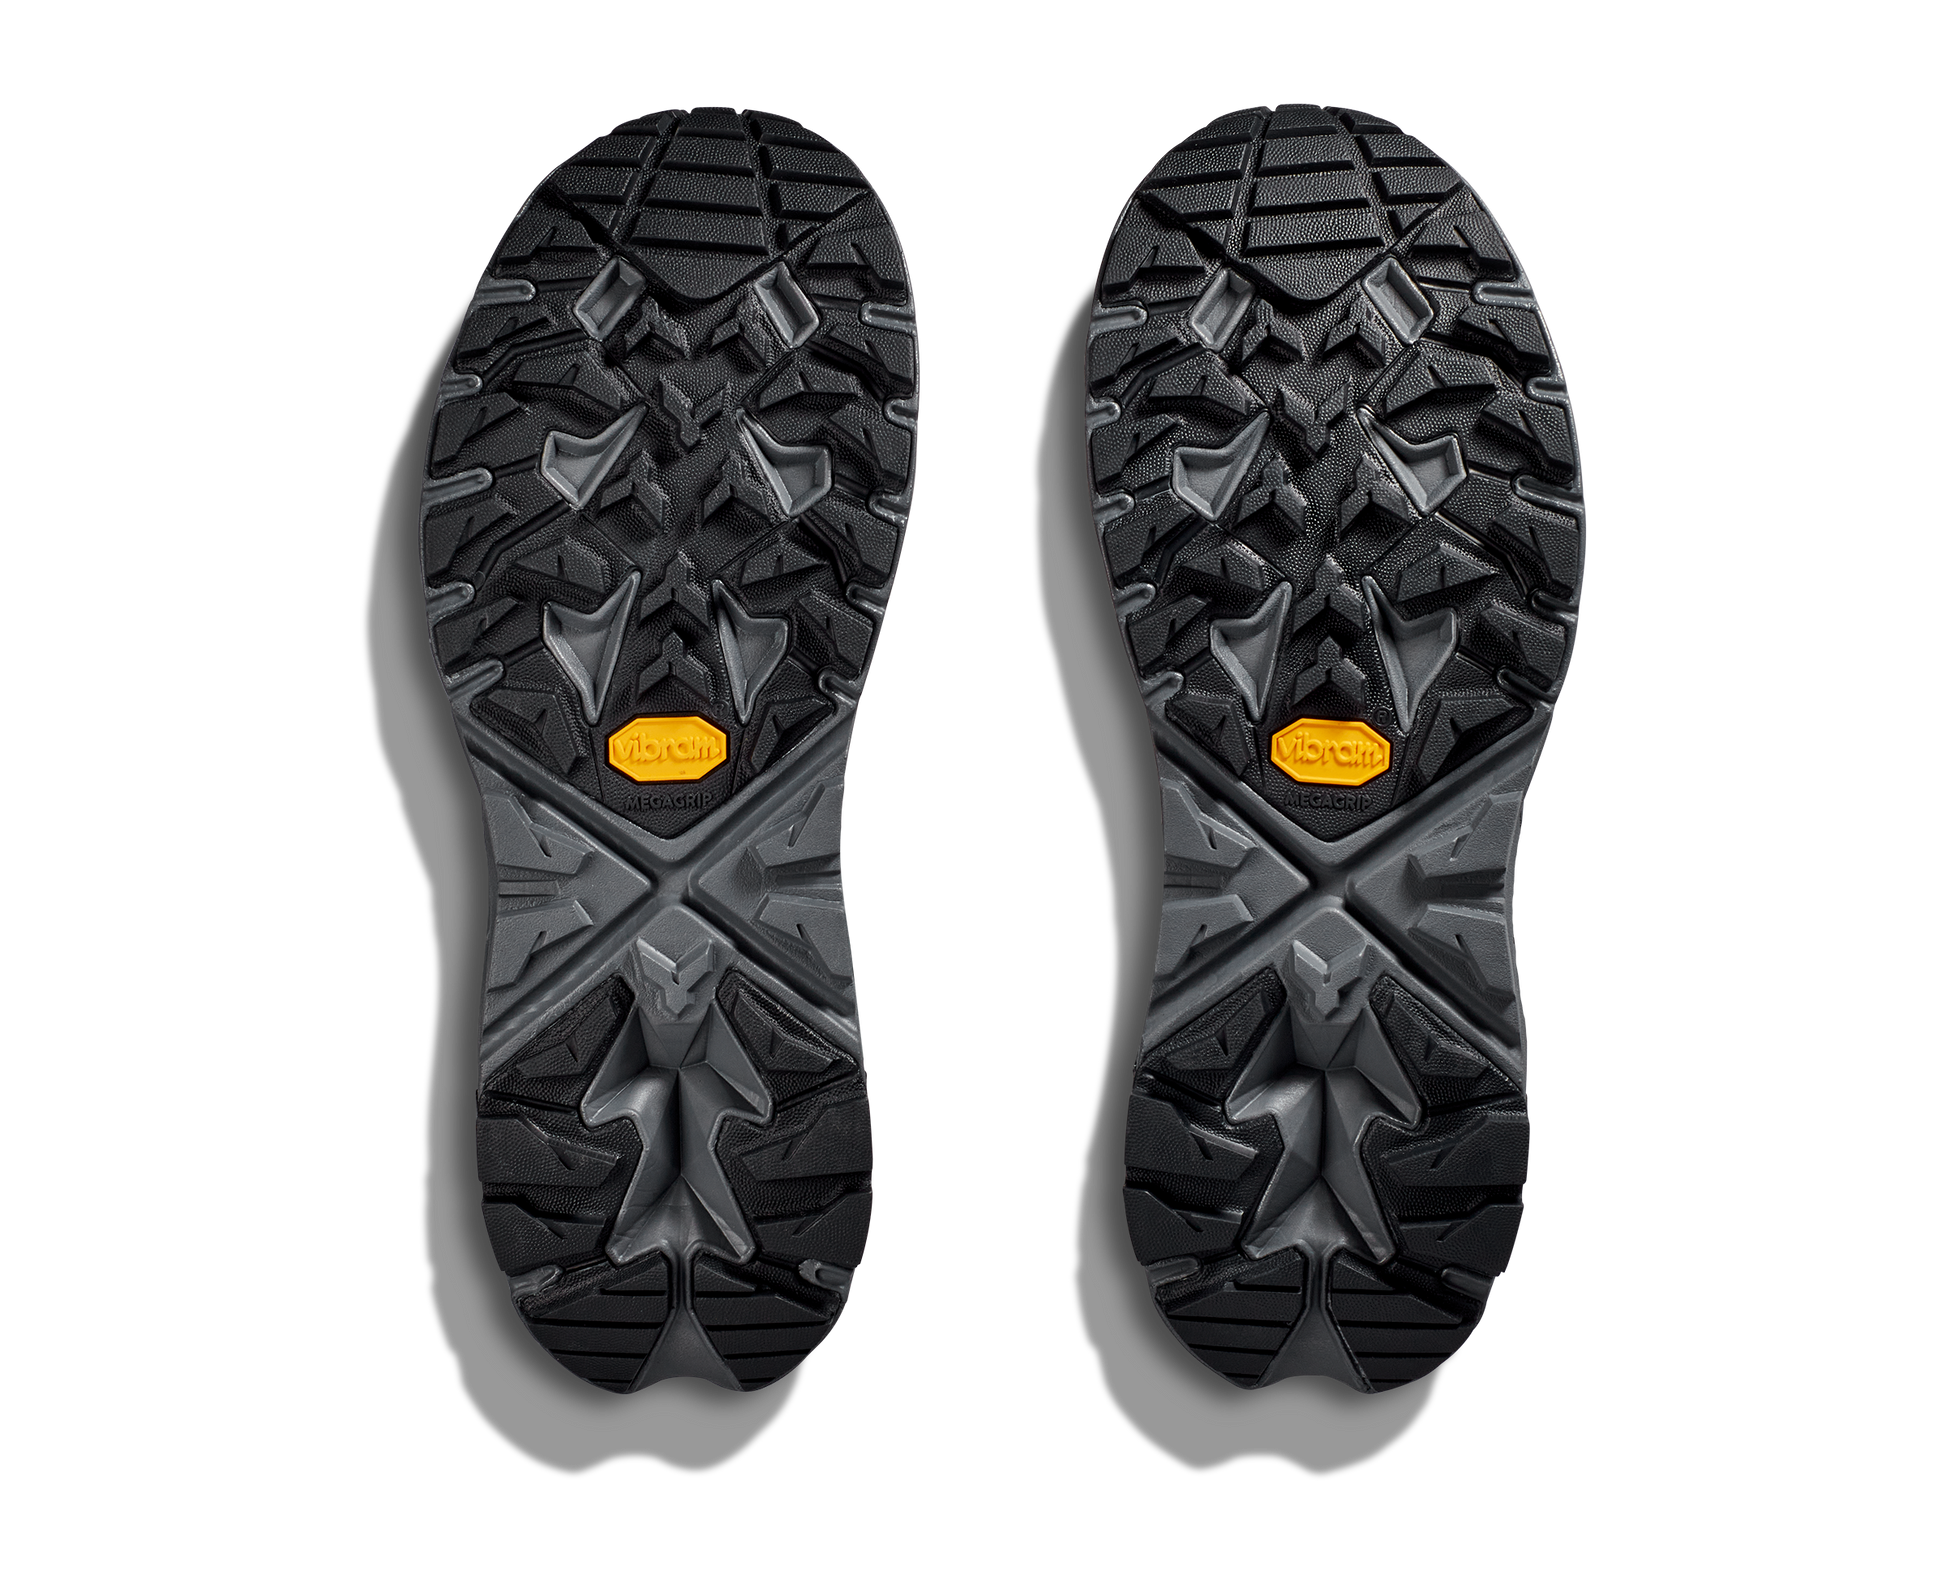 Anacapa W GTX mid, svart vattentät sko perfekt för vandring i alla underlag och väder. Hos Hoka specialisterna i Sverige.